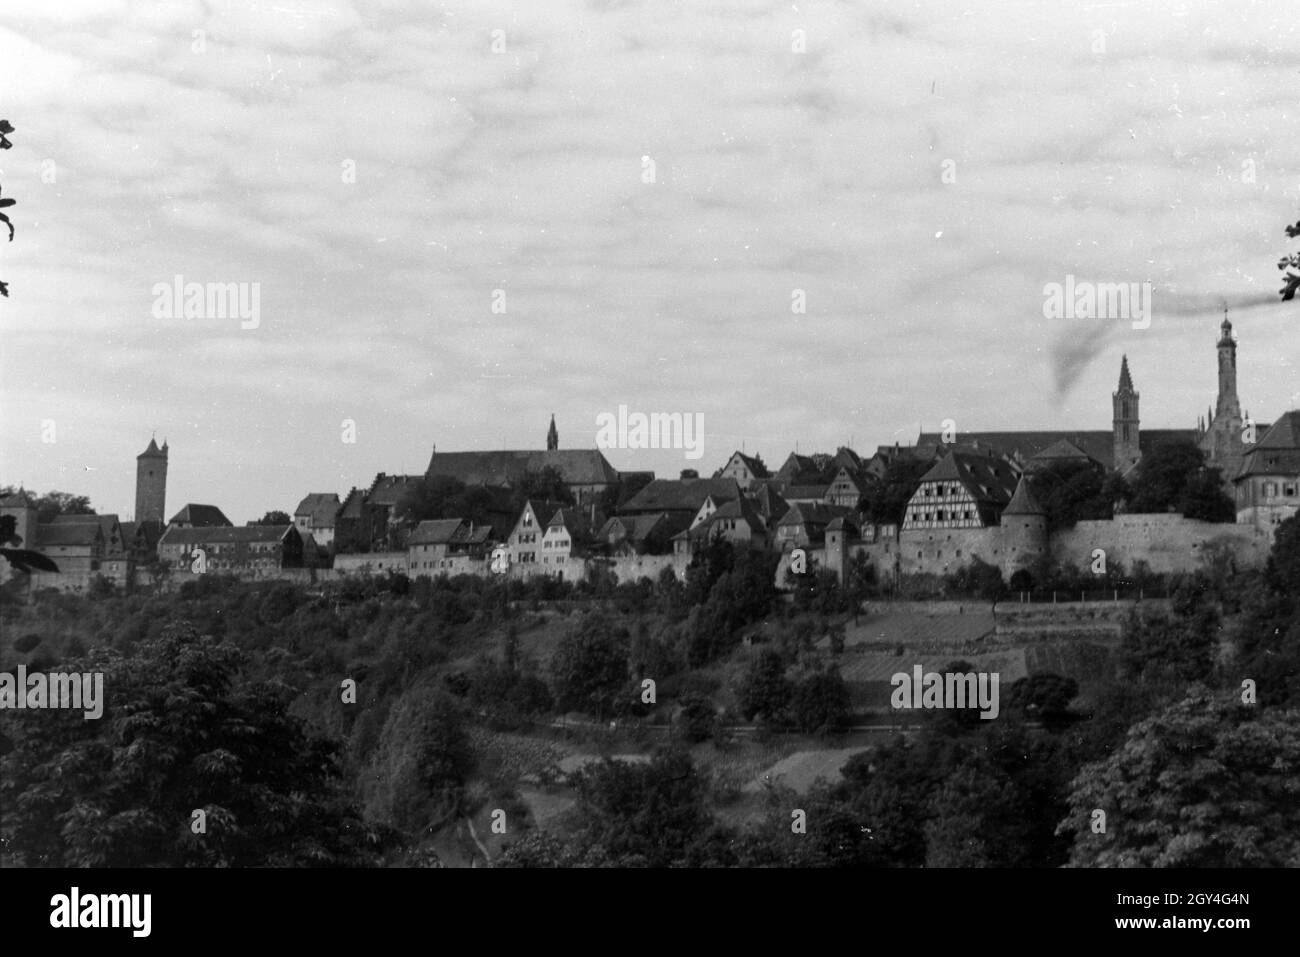 Aussicht von der Burg auf das Tal und die Stadt Rothenburg ob der Tauber, Deutschland 1930er Jahre. Panoramic view from the castle on the valley and city of Rothenburg ob der Tauber, Germany 1930s. Stock Photo